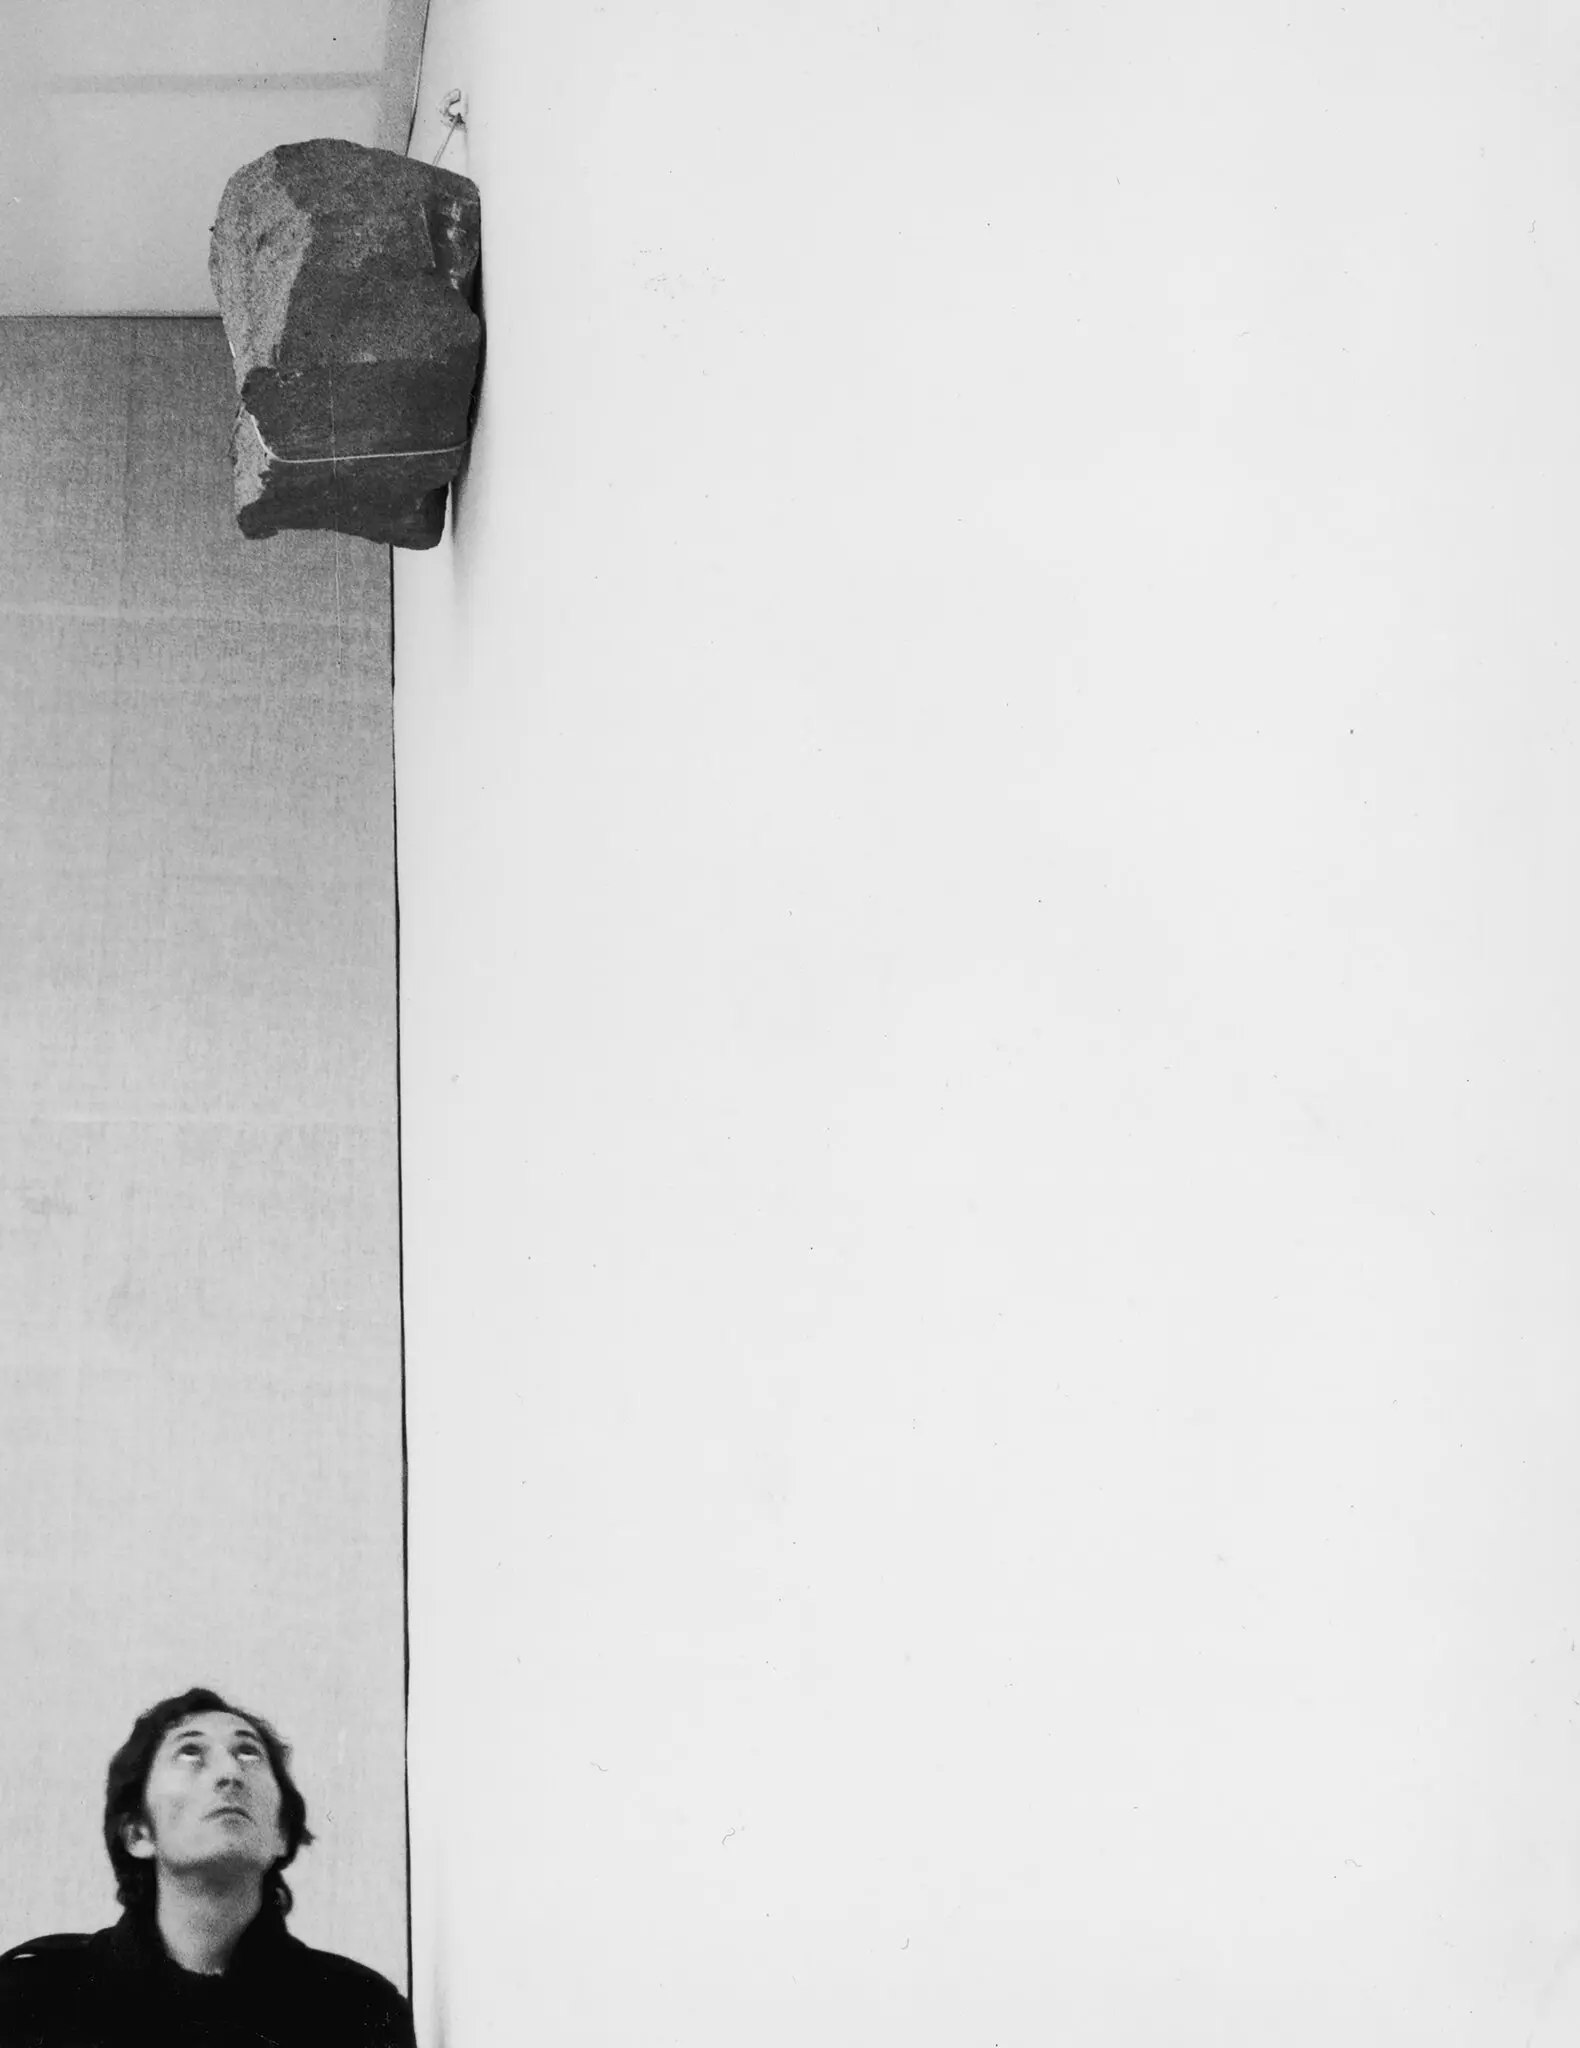 Giovanni Anselmo, foi um dos artistas italianos mais engraçados e filosóficos que fazem o que o crítico Germano Celant indelevelmente chamou de Arte Povera, ou “arte pobre”, cunhou o termo “arte povera” em conexão com uma mostra que foi curada em Gênova, que incluía obras de Jannis Kounellis, Alighiero Boetti e outros